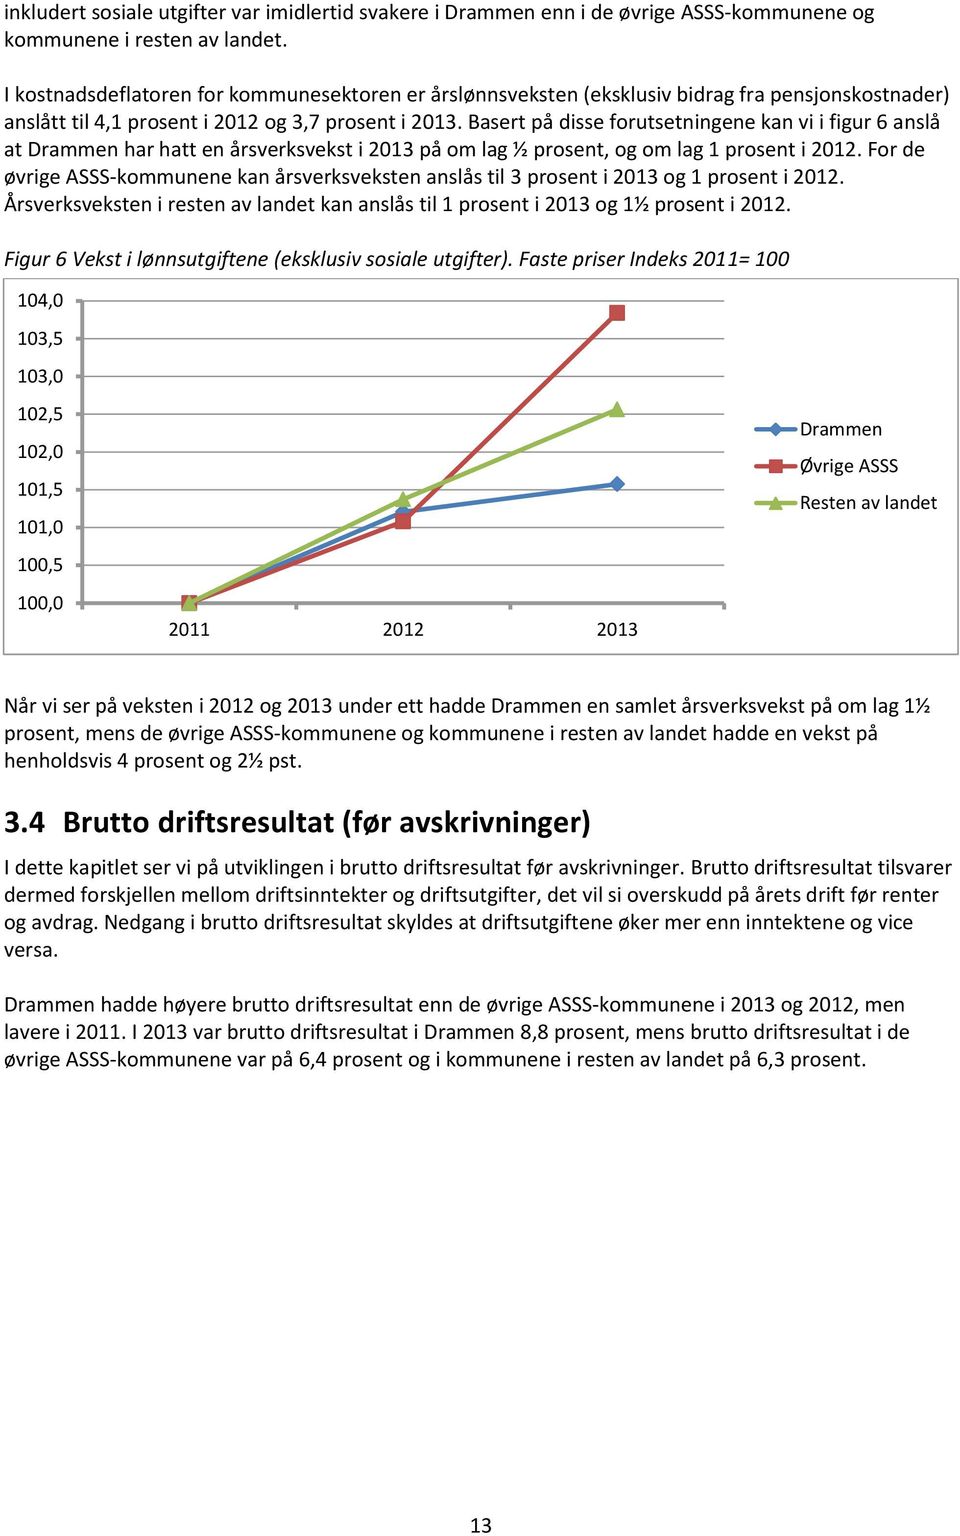 Basert på disse forutsetningene kan vi i figur 6 anslå at Drammen har hatt en årsverksvekst i 2013 på om lag ½ prosent, og om lag 1 prosent i 2012.